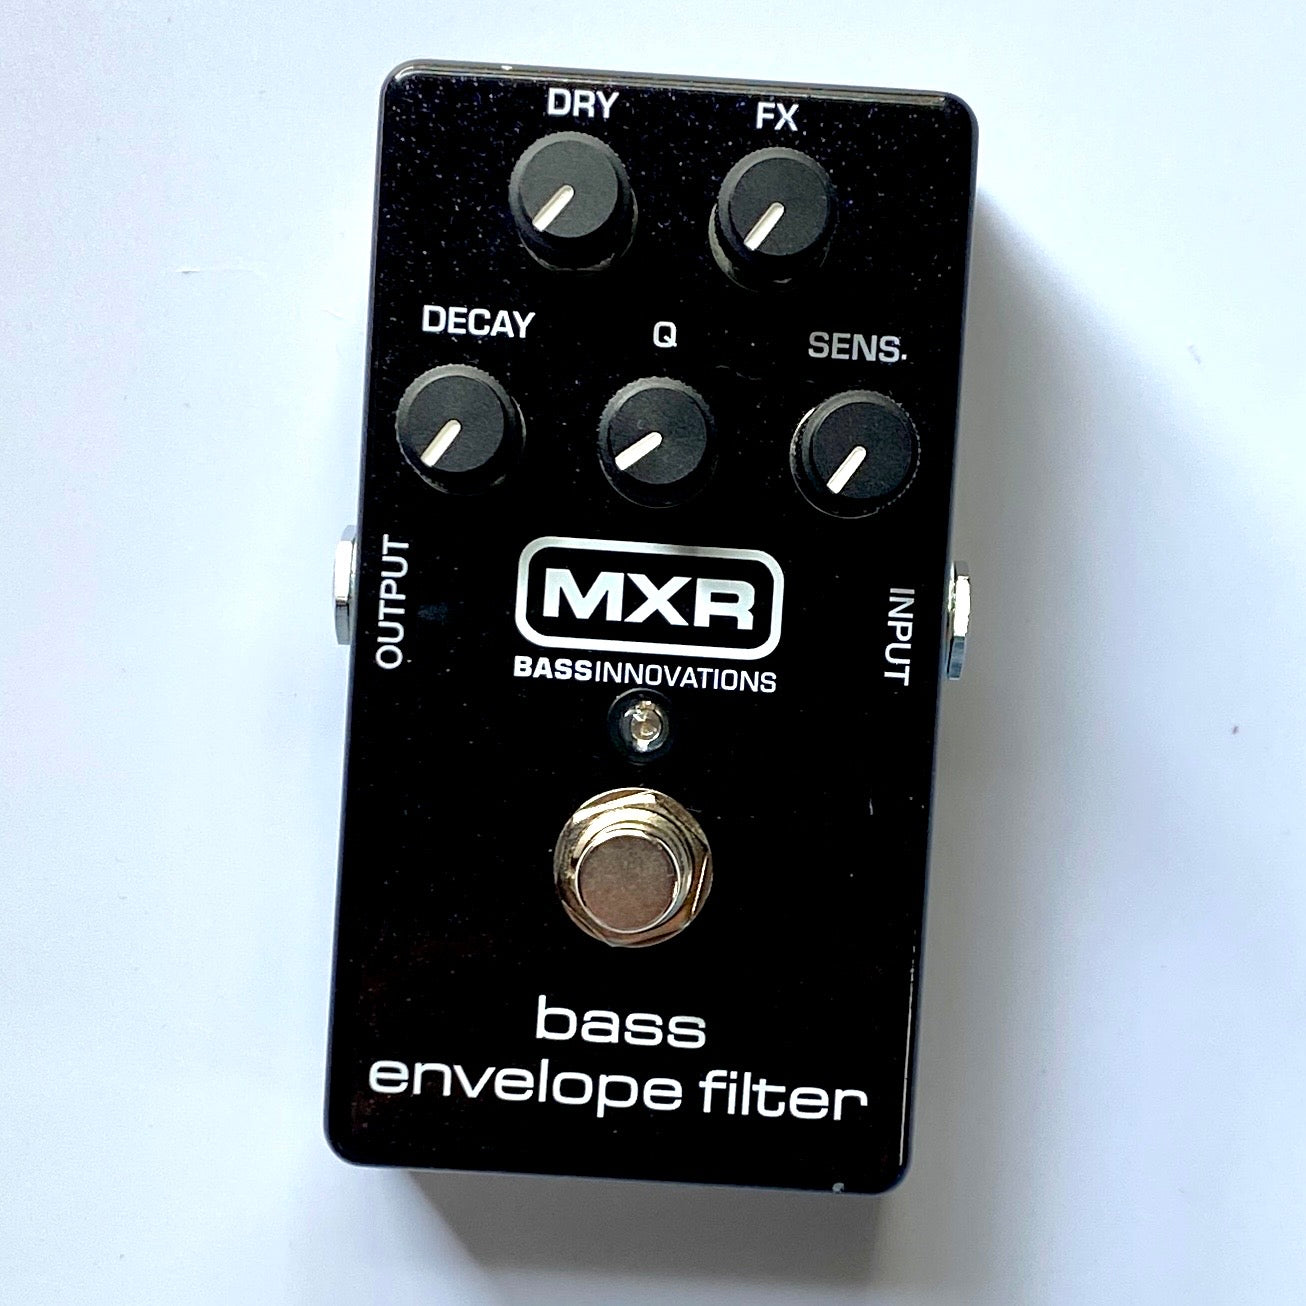 MXR M82 bass envelope filter エフェクター付属品は本体箱のみです